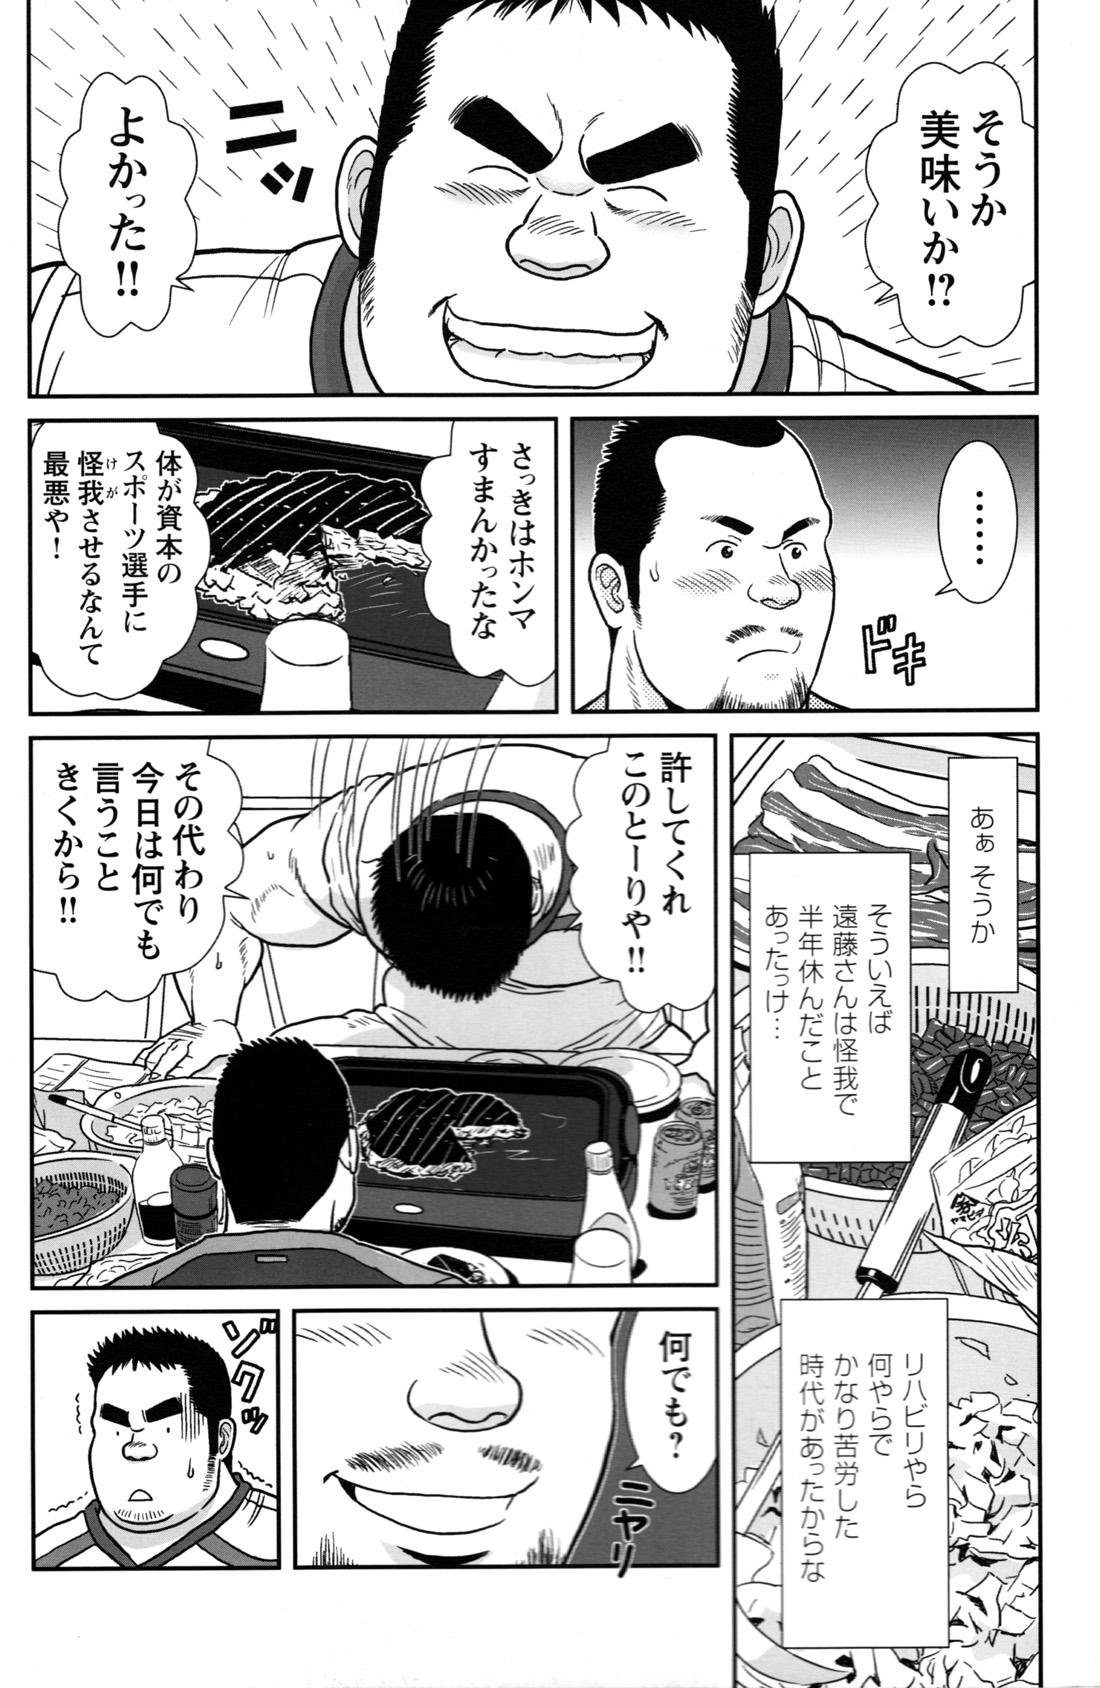 Comic G-men Gaho No.12 Aibou 189